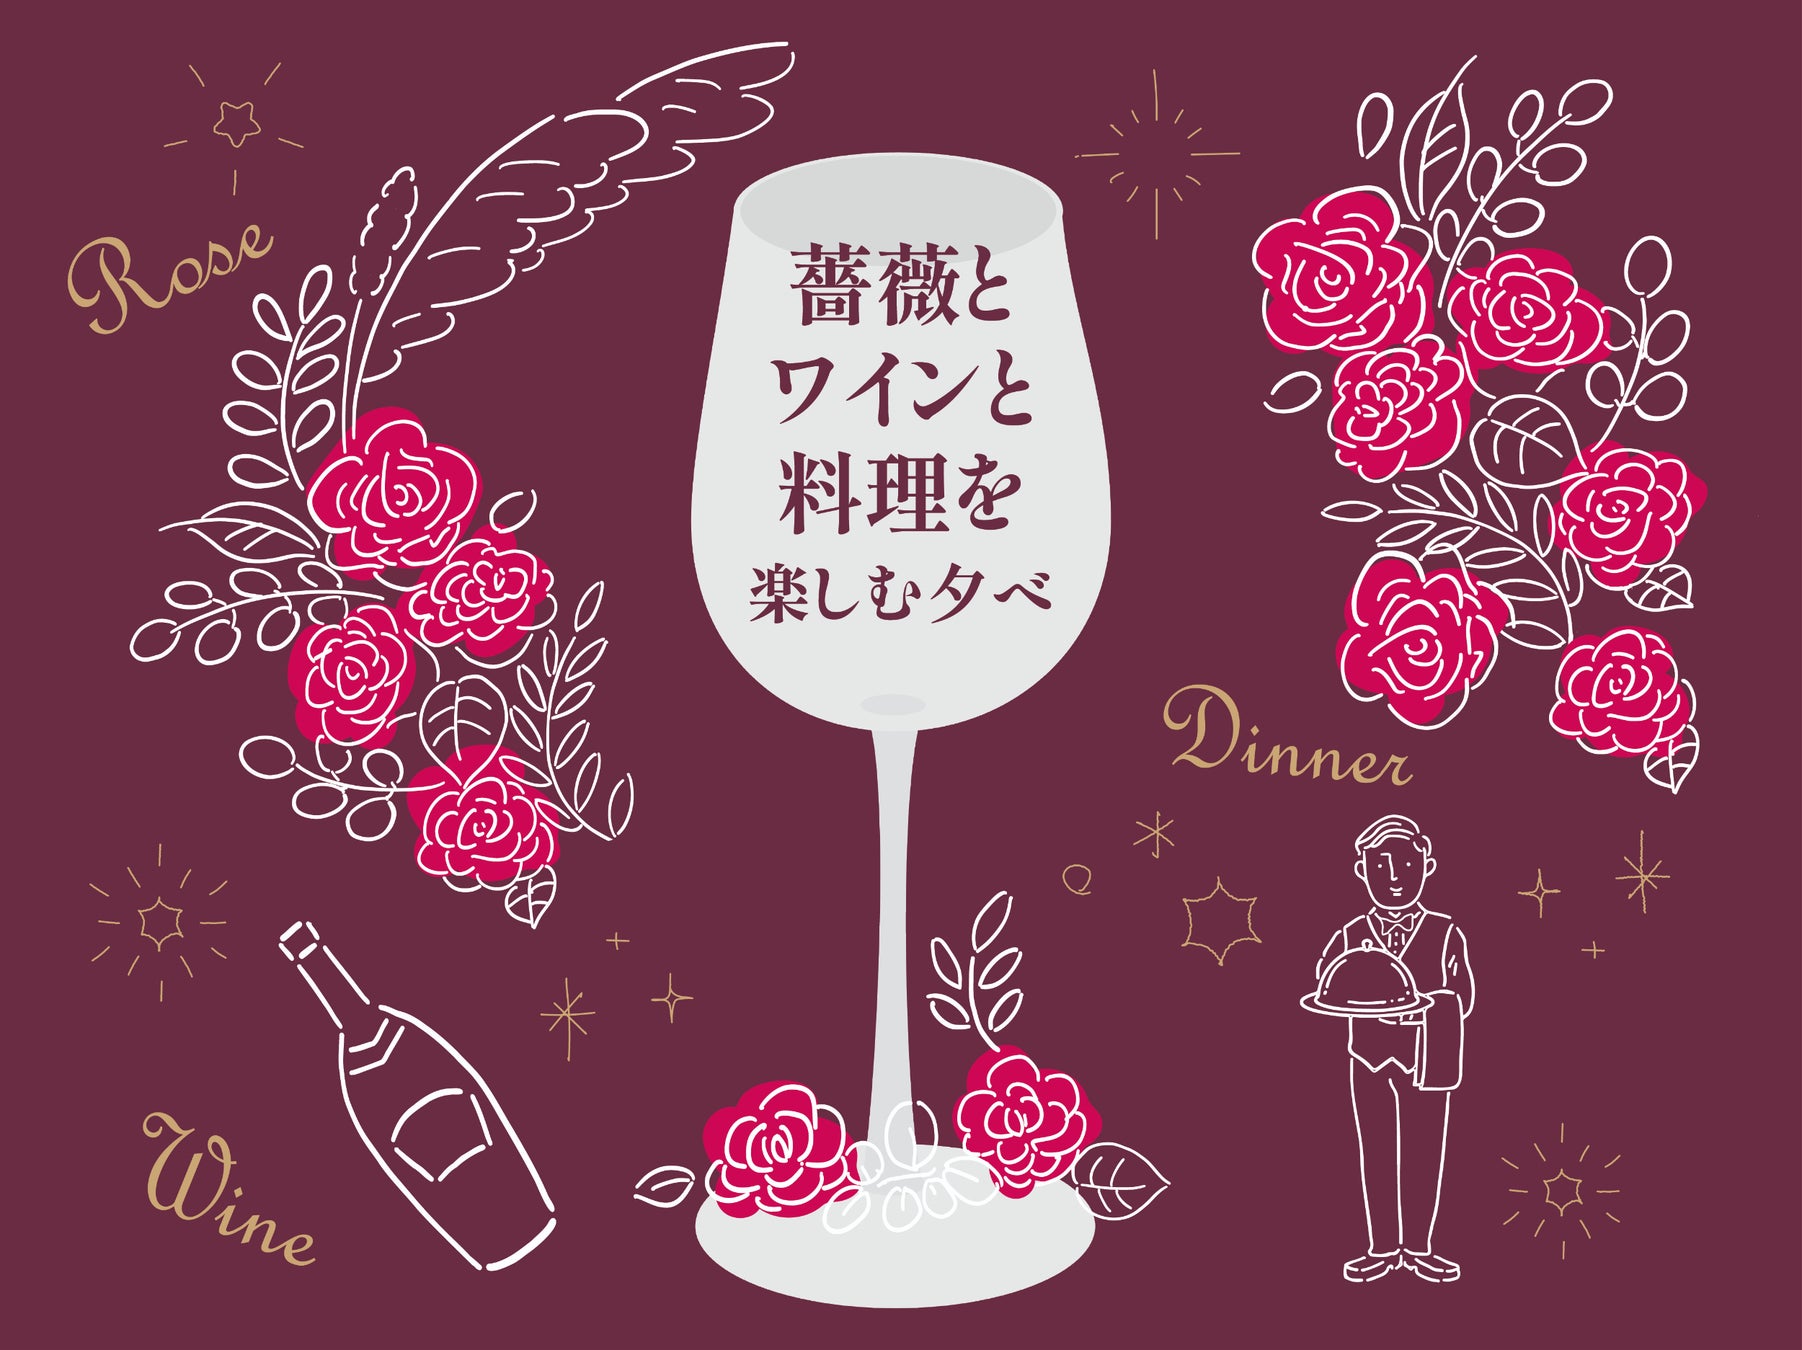 美食とバラ鑑賞の饗宴を楽しむディナーイベント「薔薇とワインと料理を楽しむ夕べ」